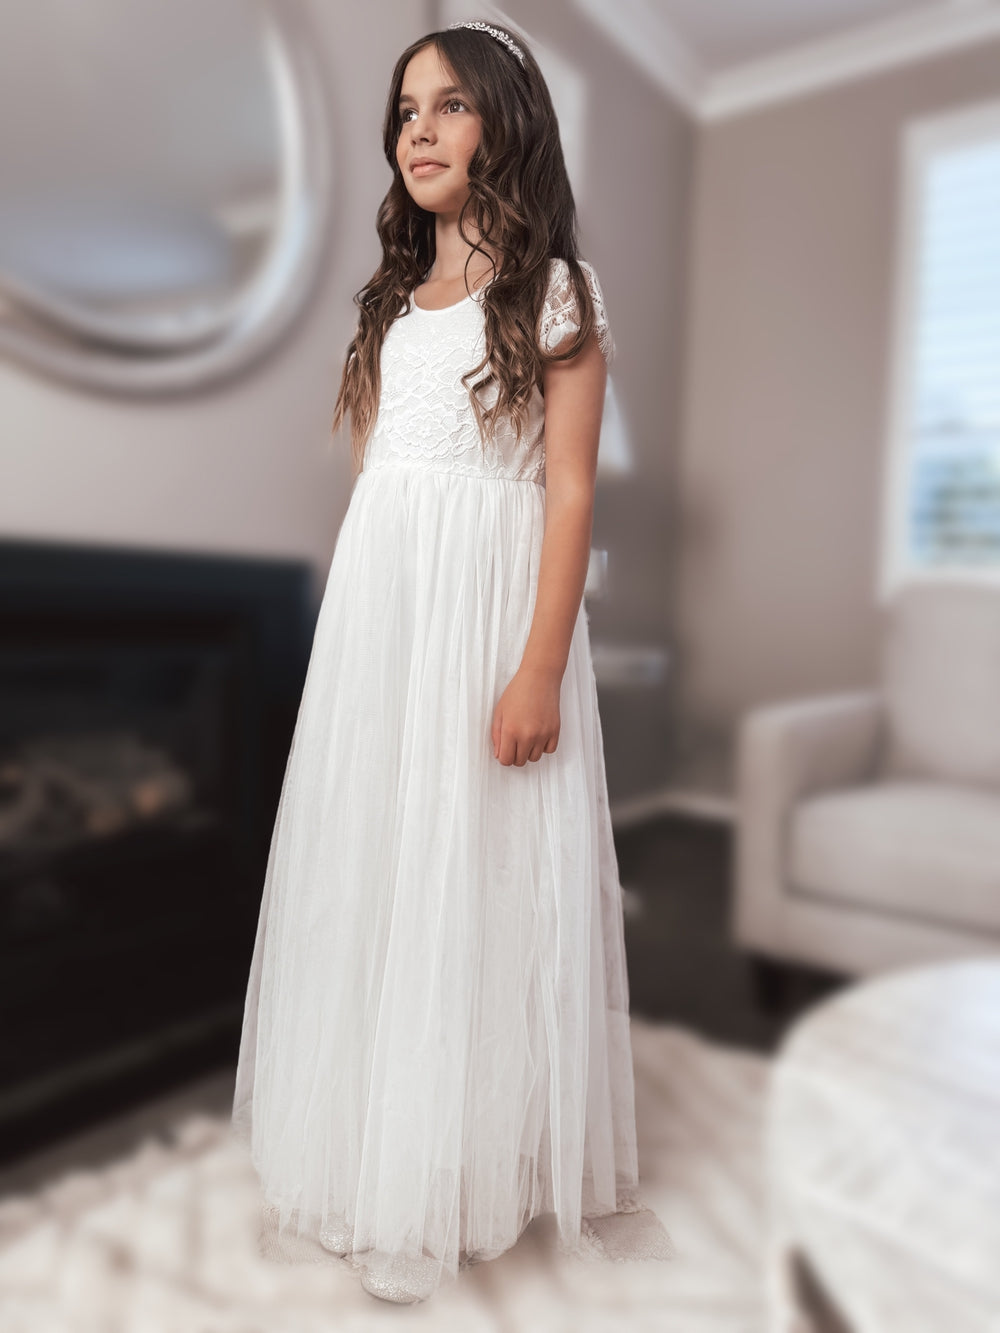 Celeste Girls White Lace & Tulle Dress - Not on saleWhite first communion dress - full length dress